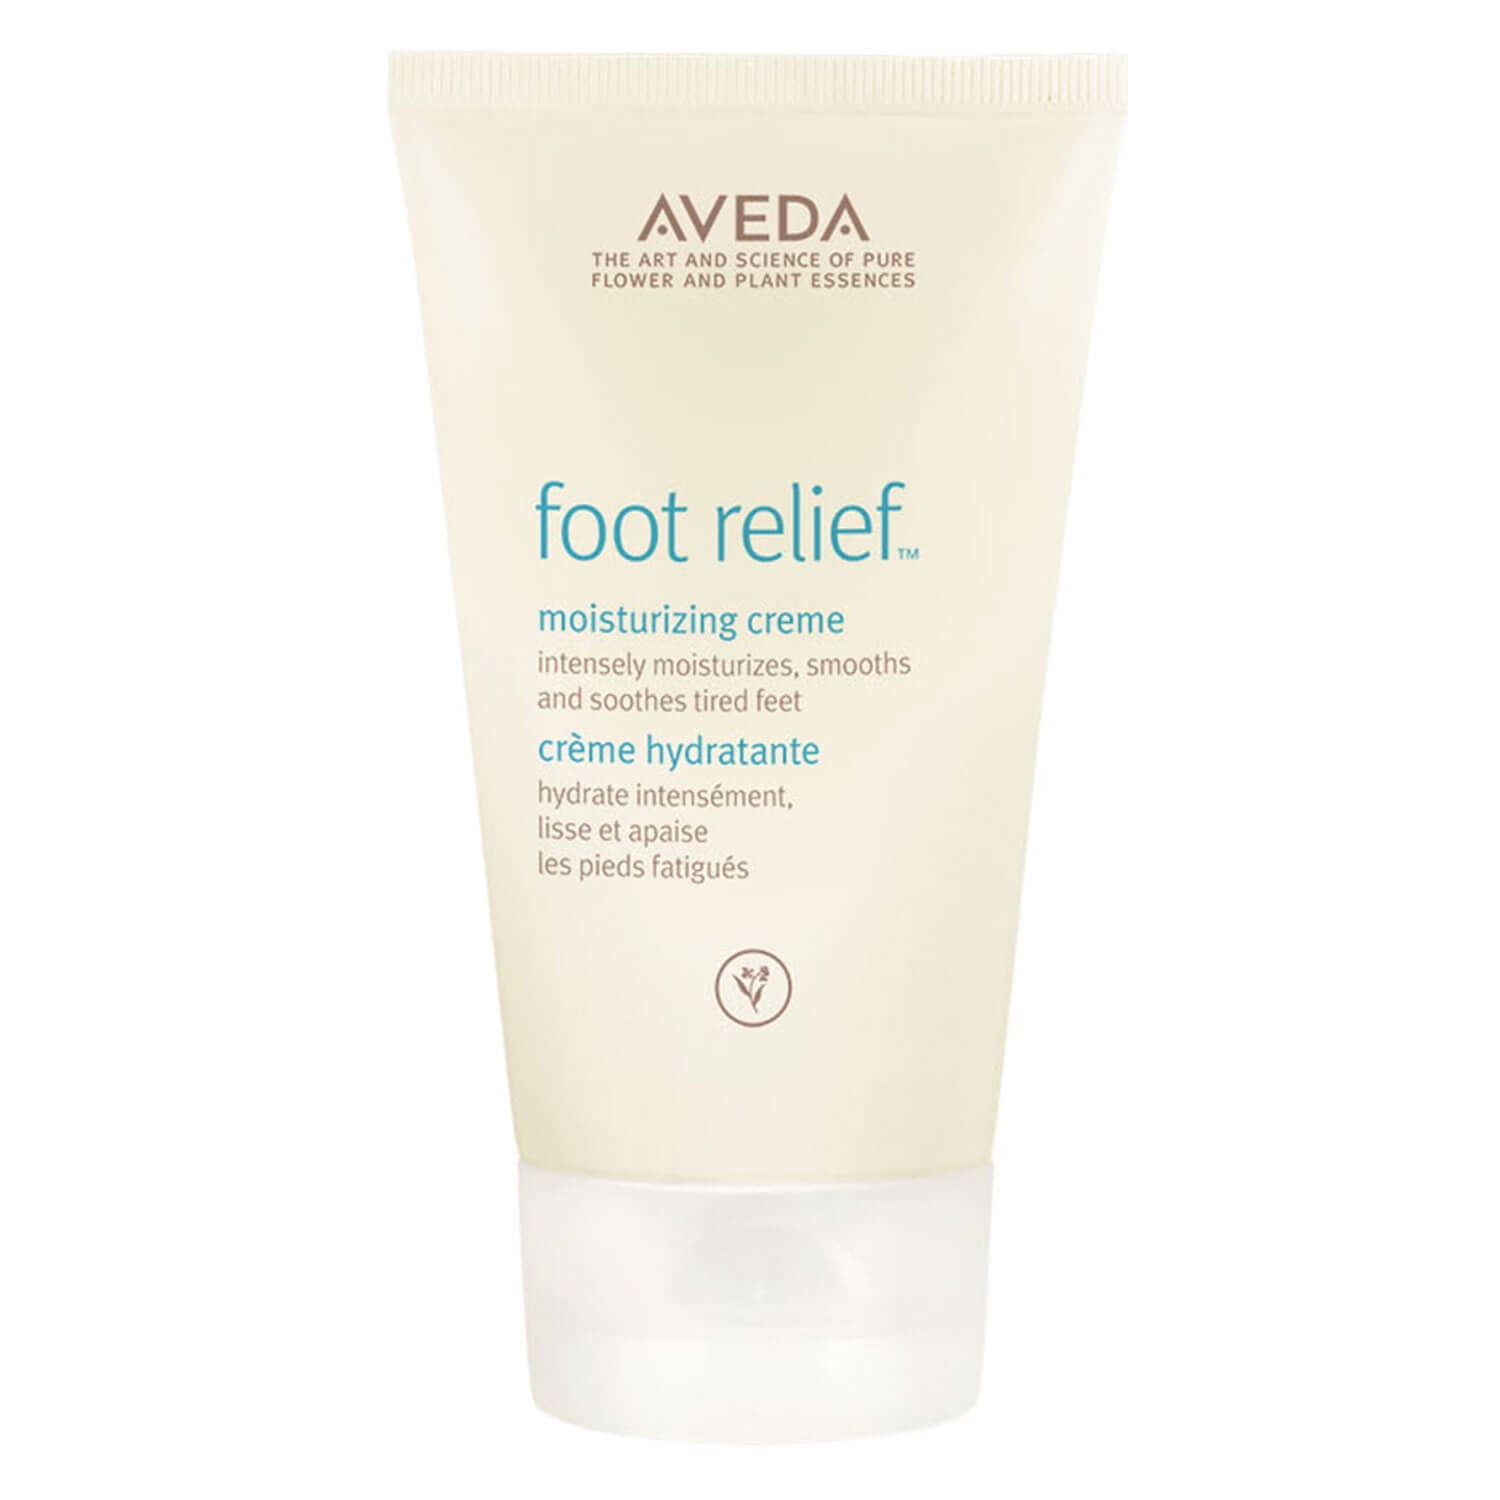 Produktbild von foot relief - moisturizing creme